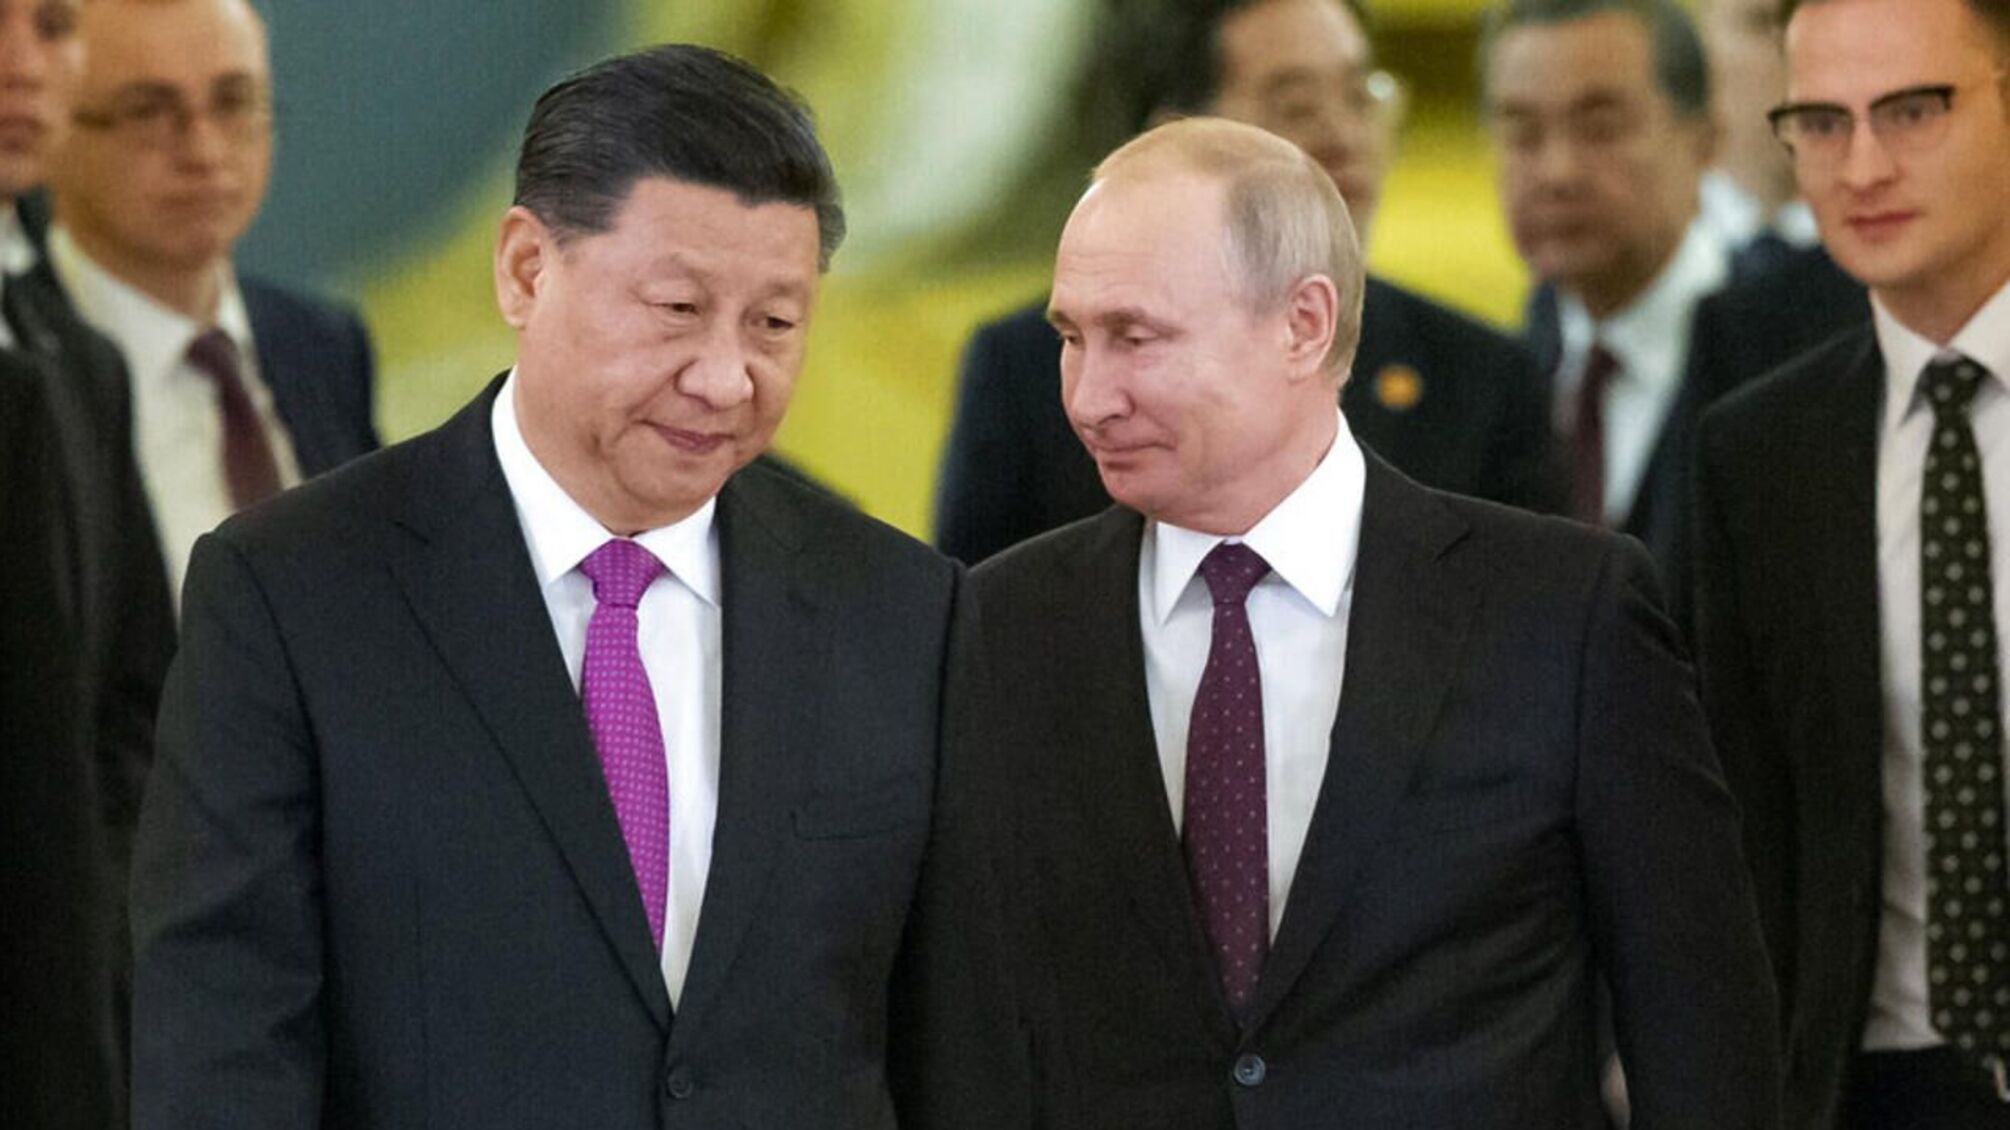 Глава КНР отказал путину на приглашение посетить россию - японская газета Yomiuri